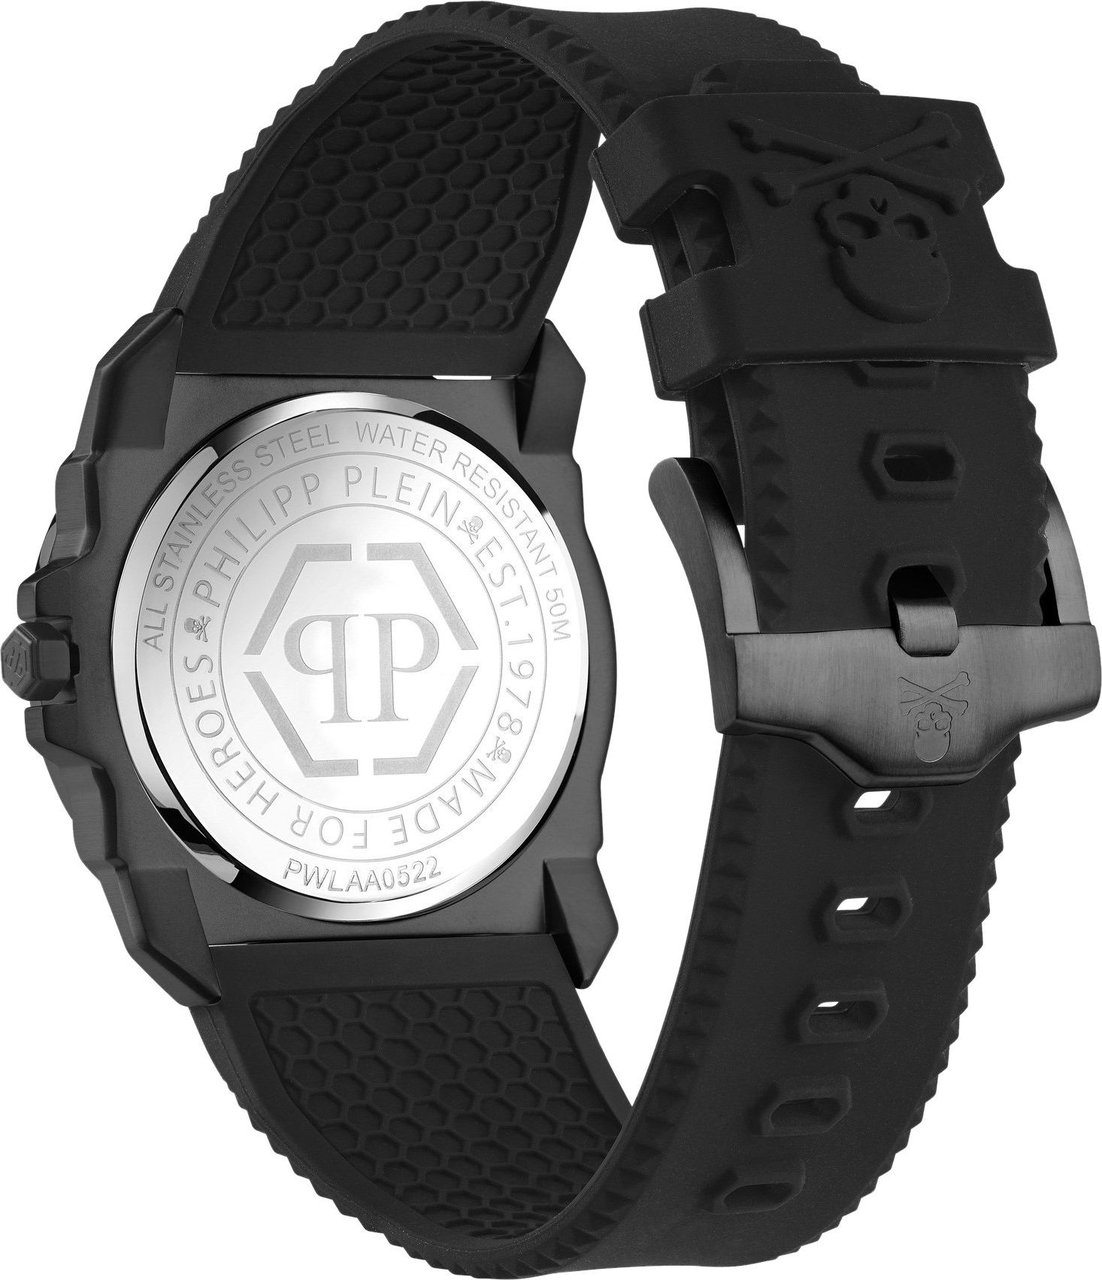 Philipp Plein PWLAA0522 The $kull King horloge 40 mm Zwart